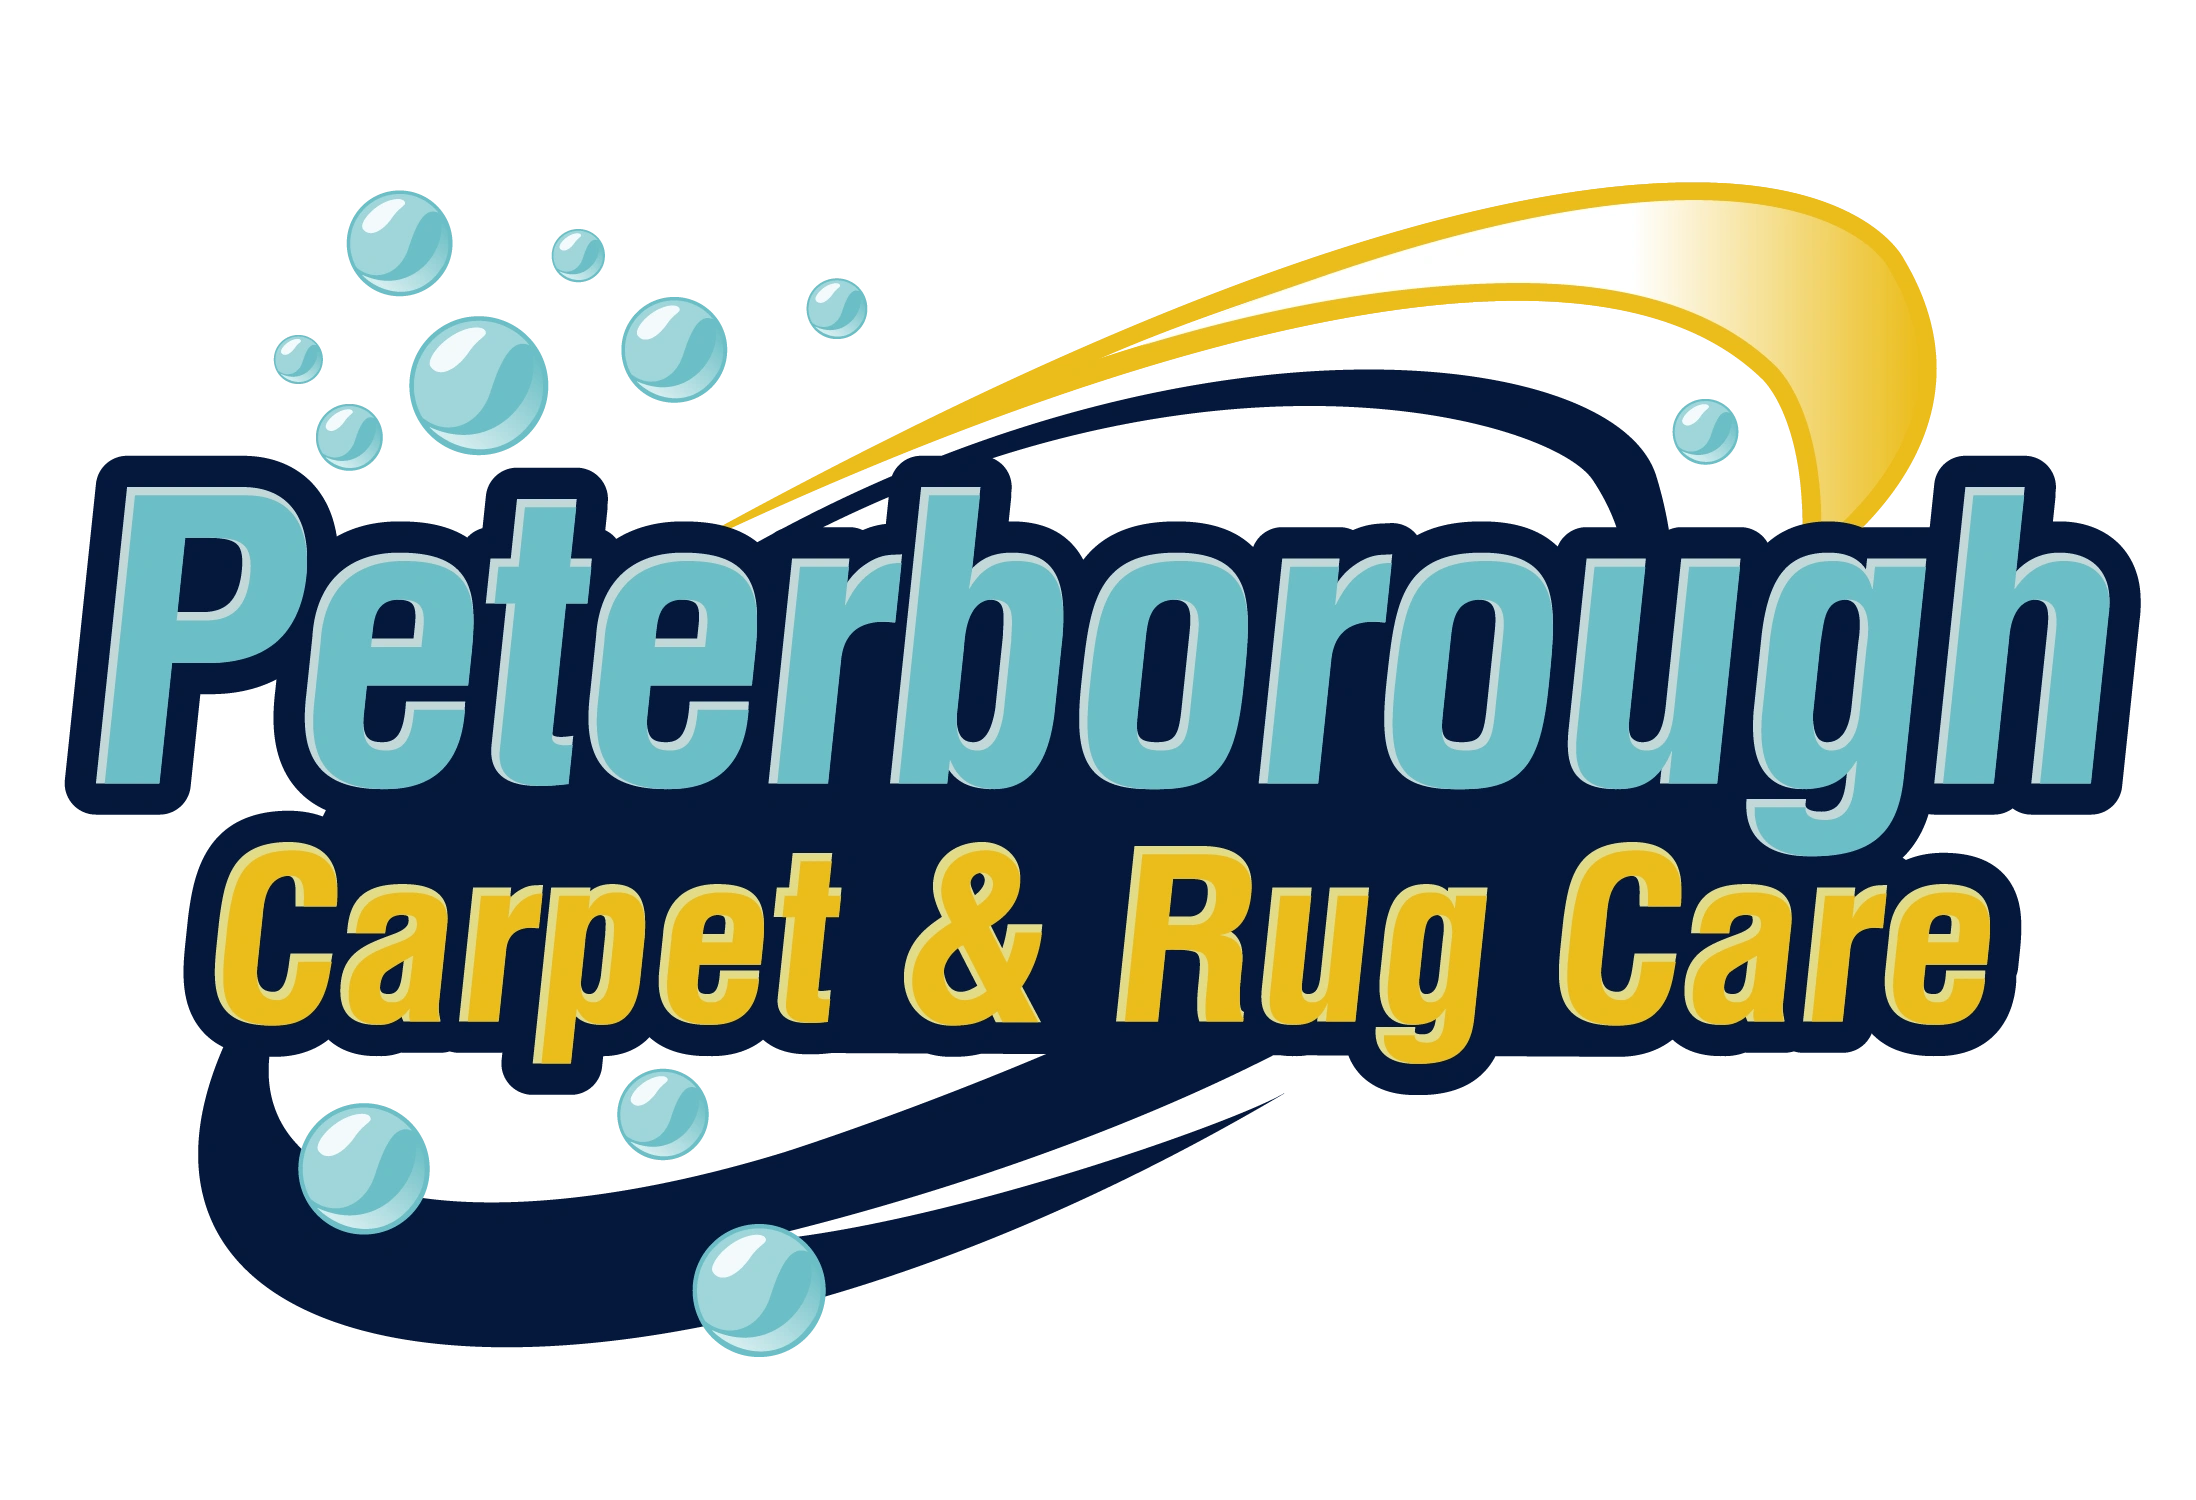 Carpet Cleaning - Peterborough Carpet Care